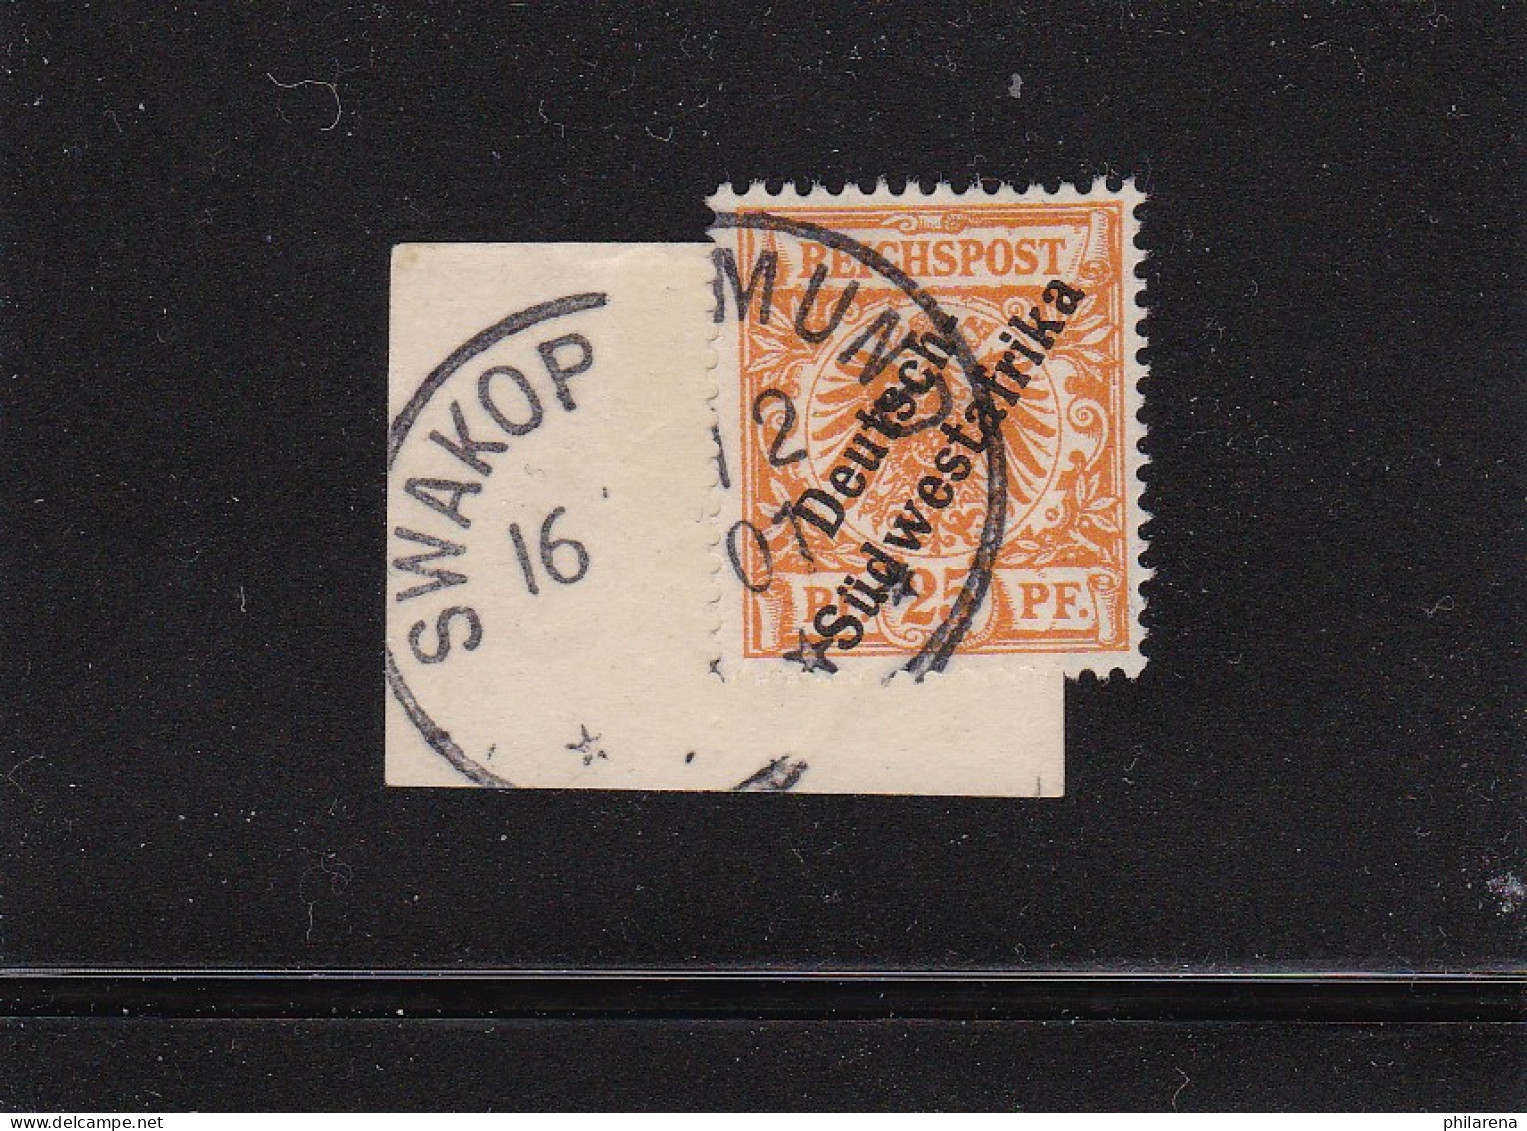 DSWA: MiNr. 9a, Gestempelt Swakopmund 1901, Briefstück - Sud-Ouest Africain Allemand